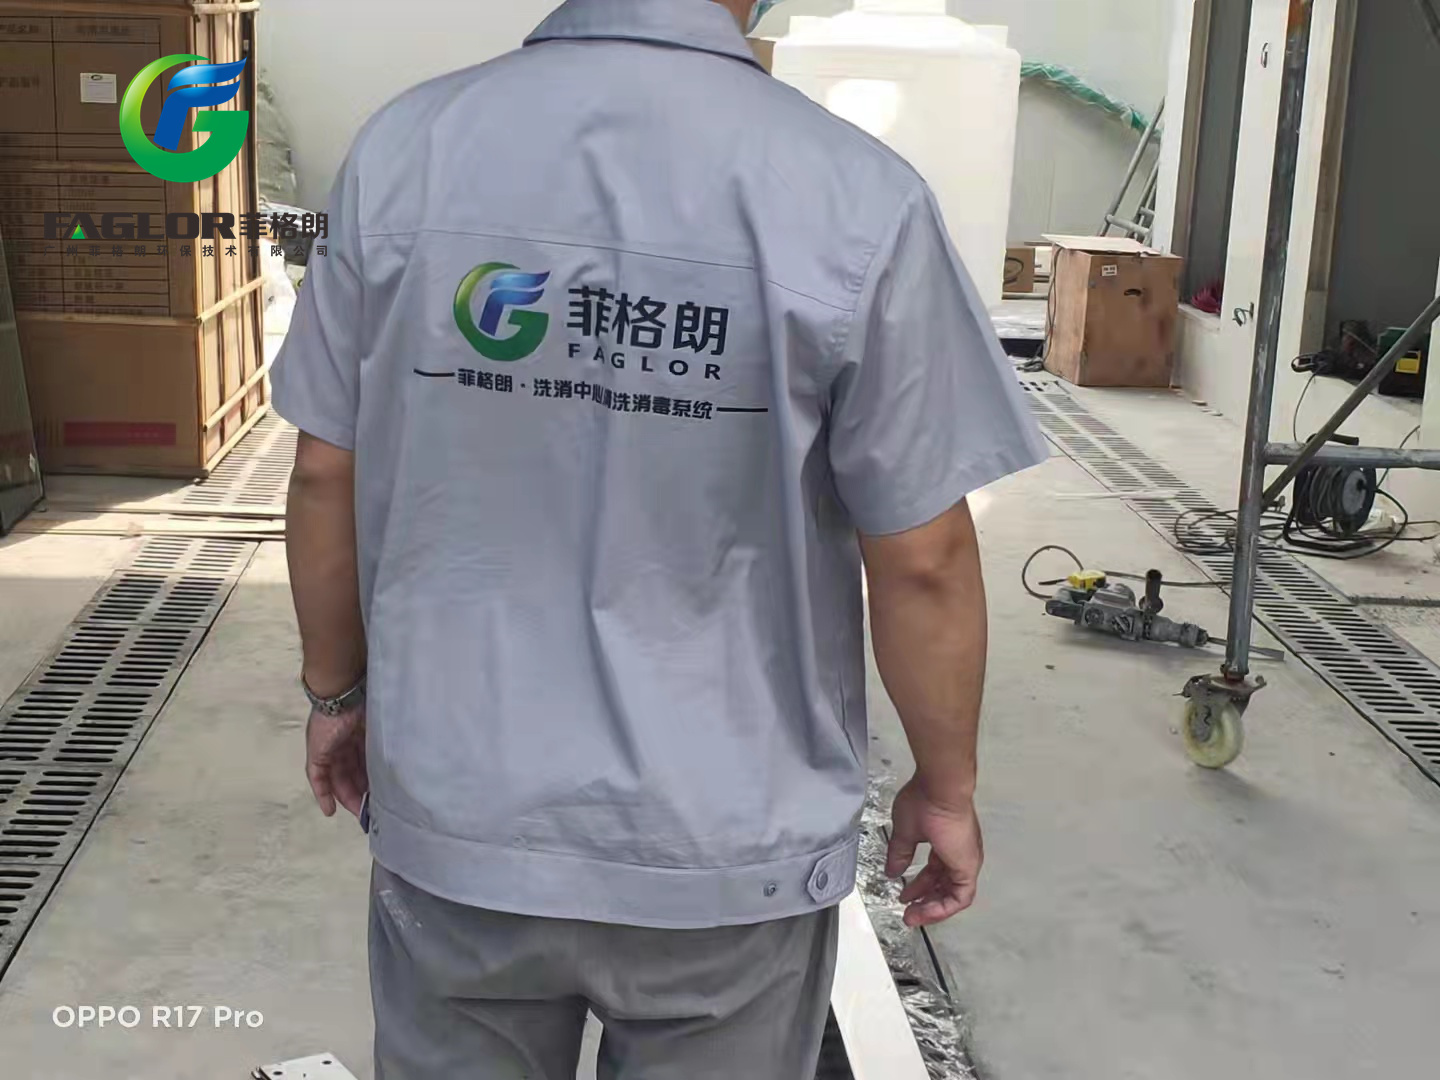 蘇州第五人民醫院救護車洗消中心投成使用